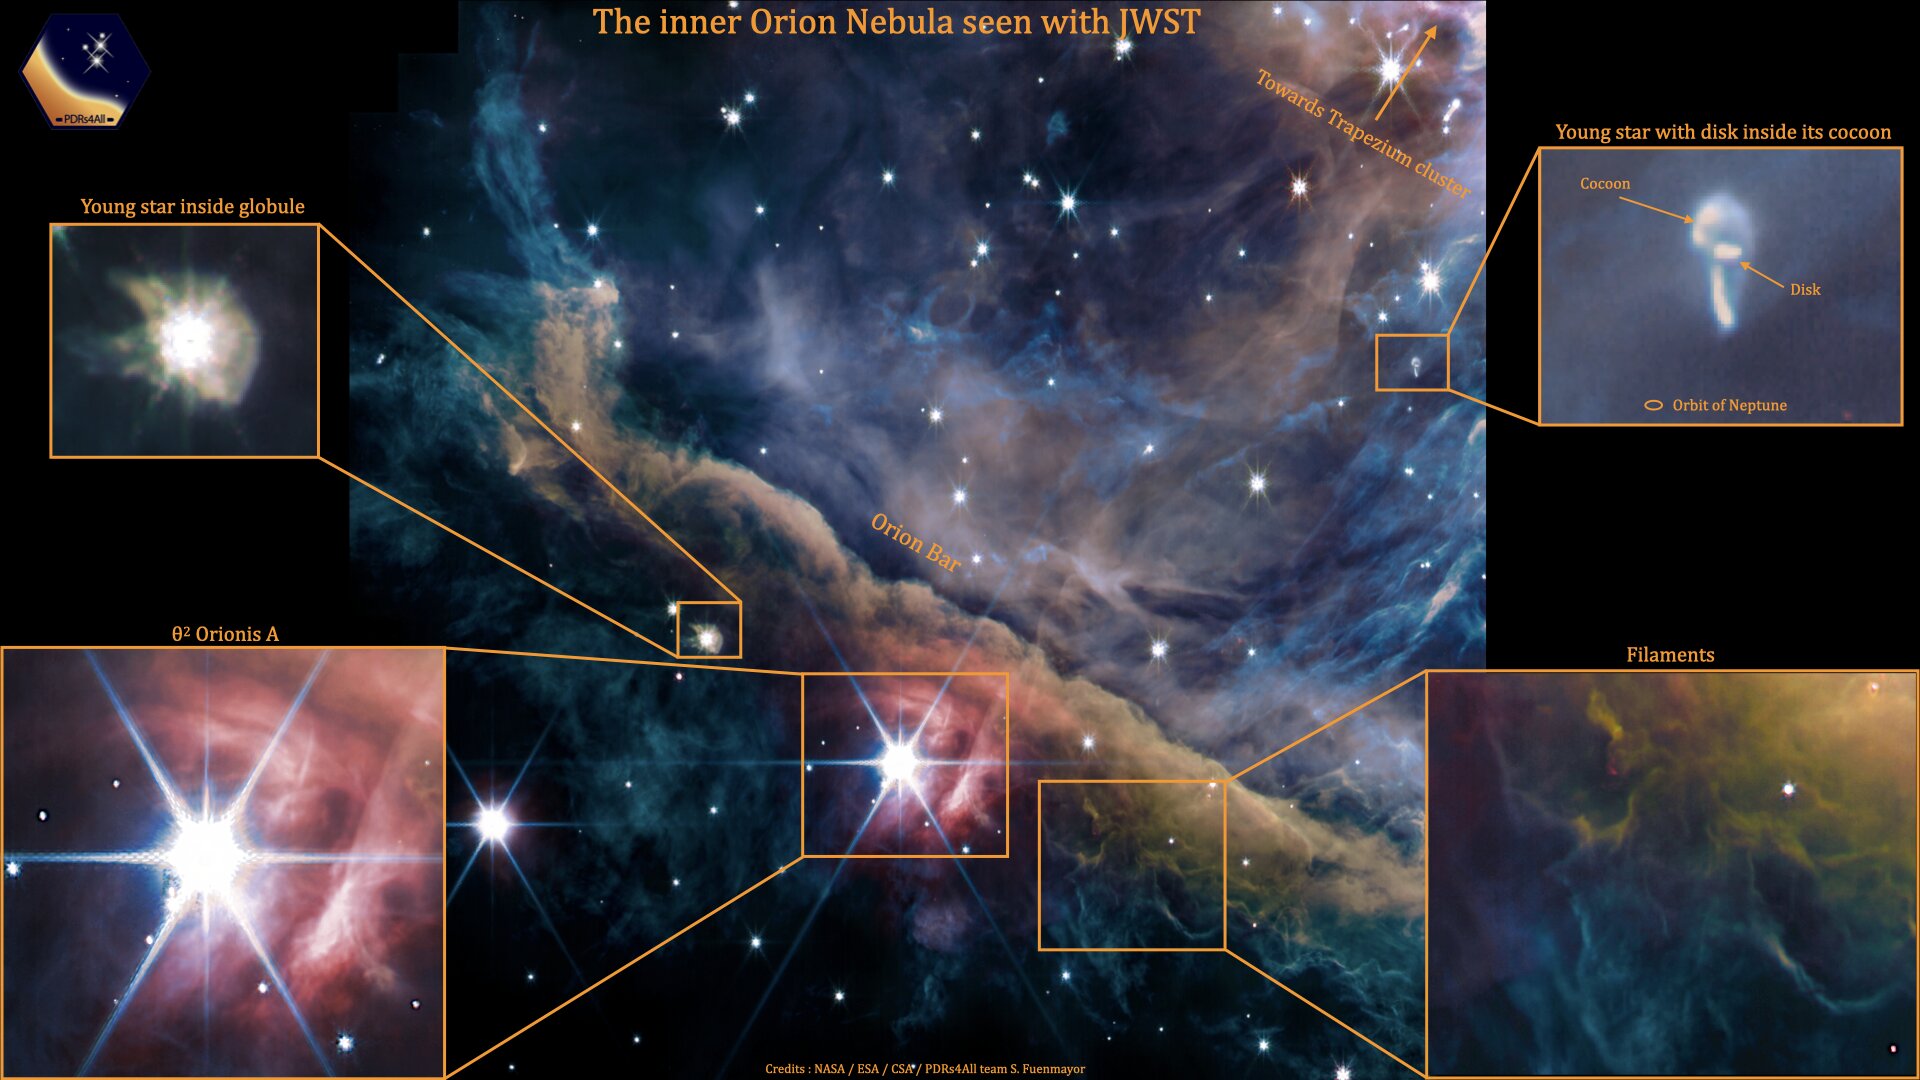 El telescopio Webb capturó imágenes impresionantes de la Nebulosa de Orión  - Infobae